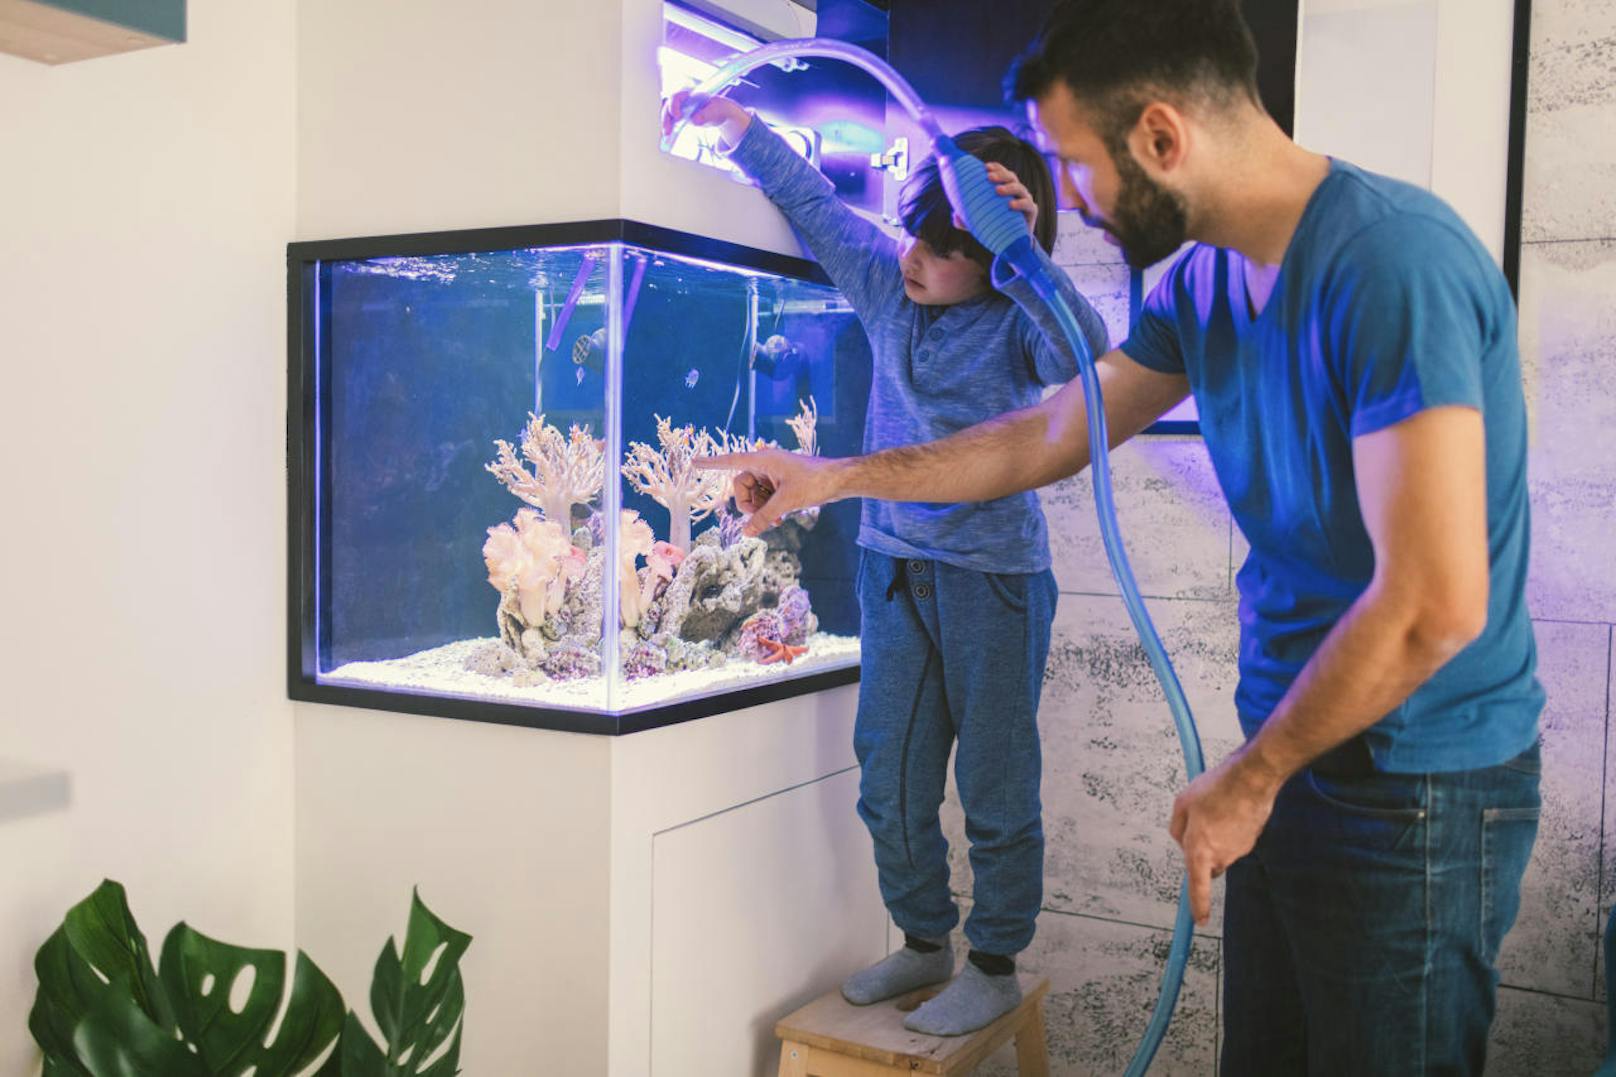 Das Wasser im Aquarium kann sich für die Fische lebensbedrohlich aufheizen. Notfalls sollte vorsichtig kaltes Wasser nachgefüllt werden.